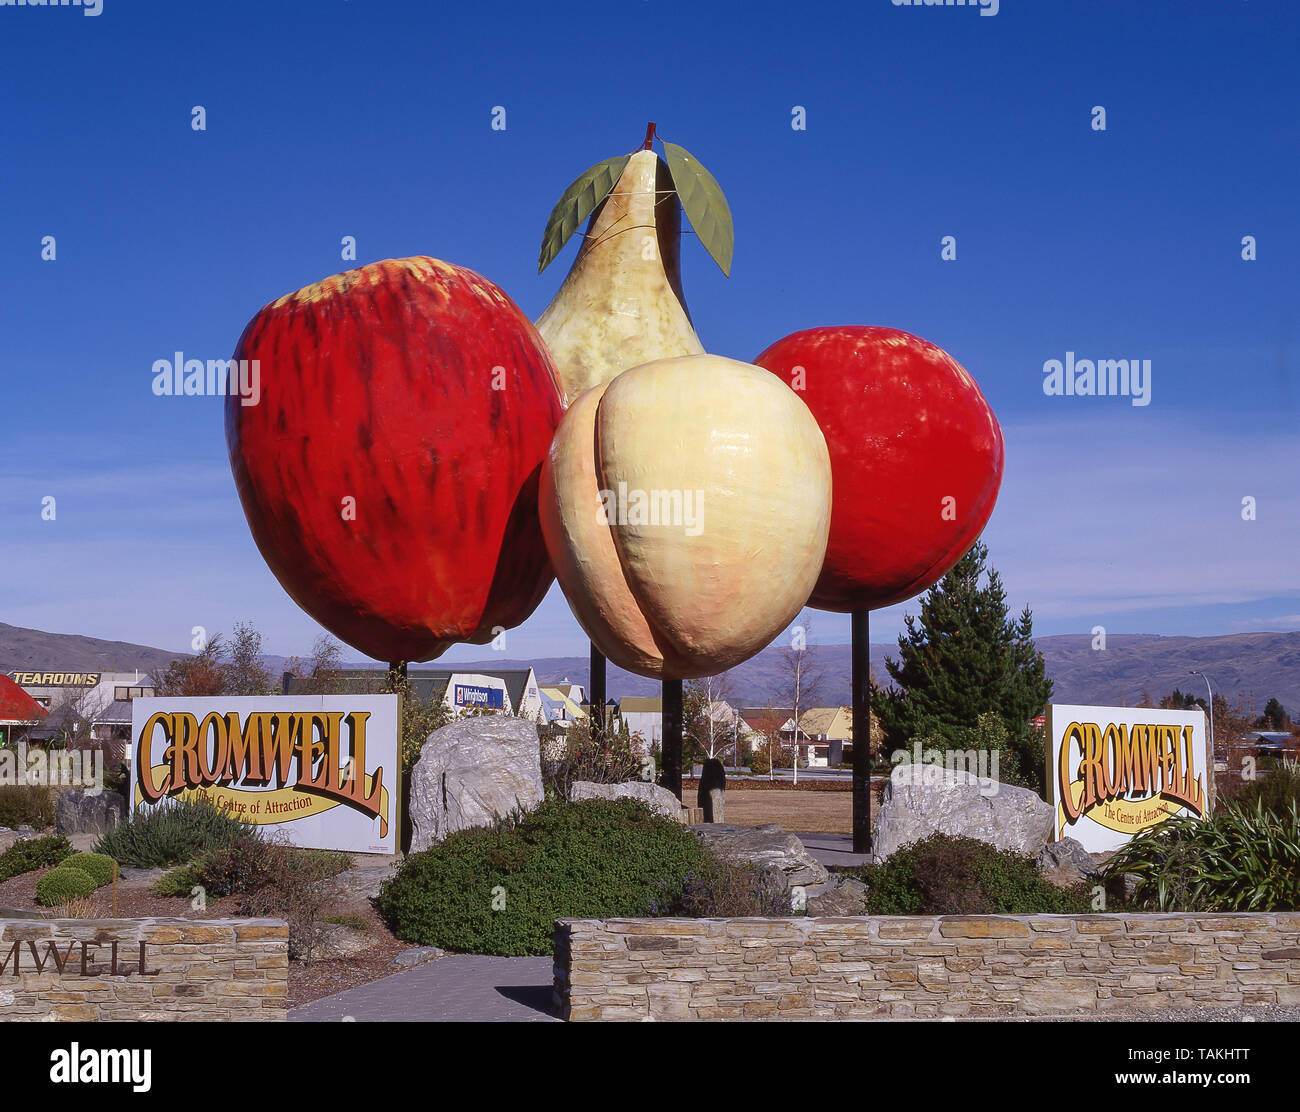 La sculpture de fruits géant et panneau de bienvenue, Cromwell, Région de l'Otago, île du Sud, Nouvelle-Zélande Banque D'Images